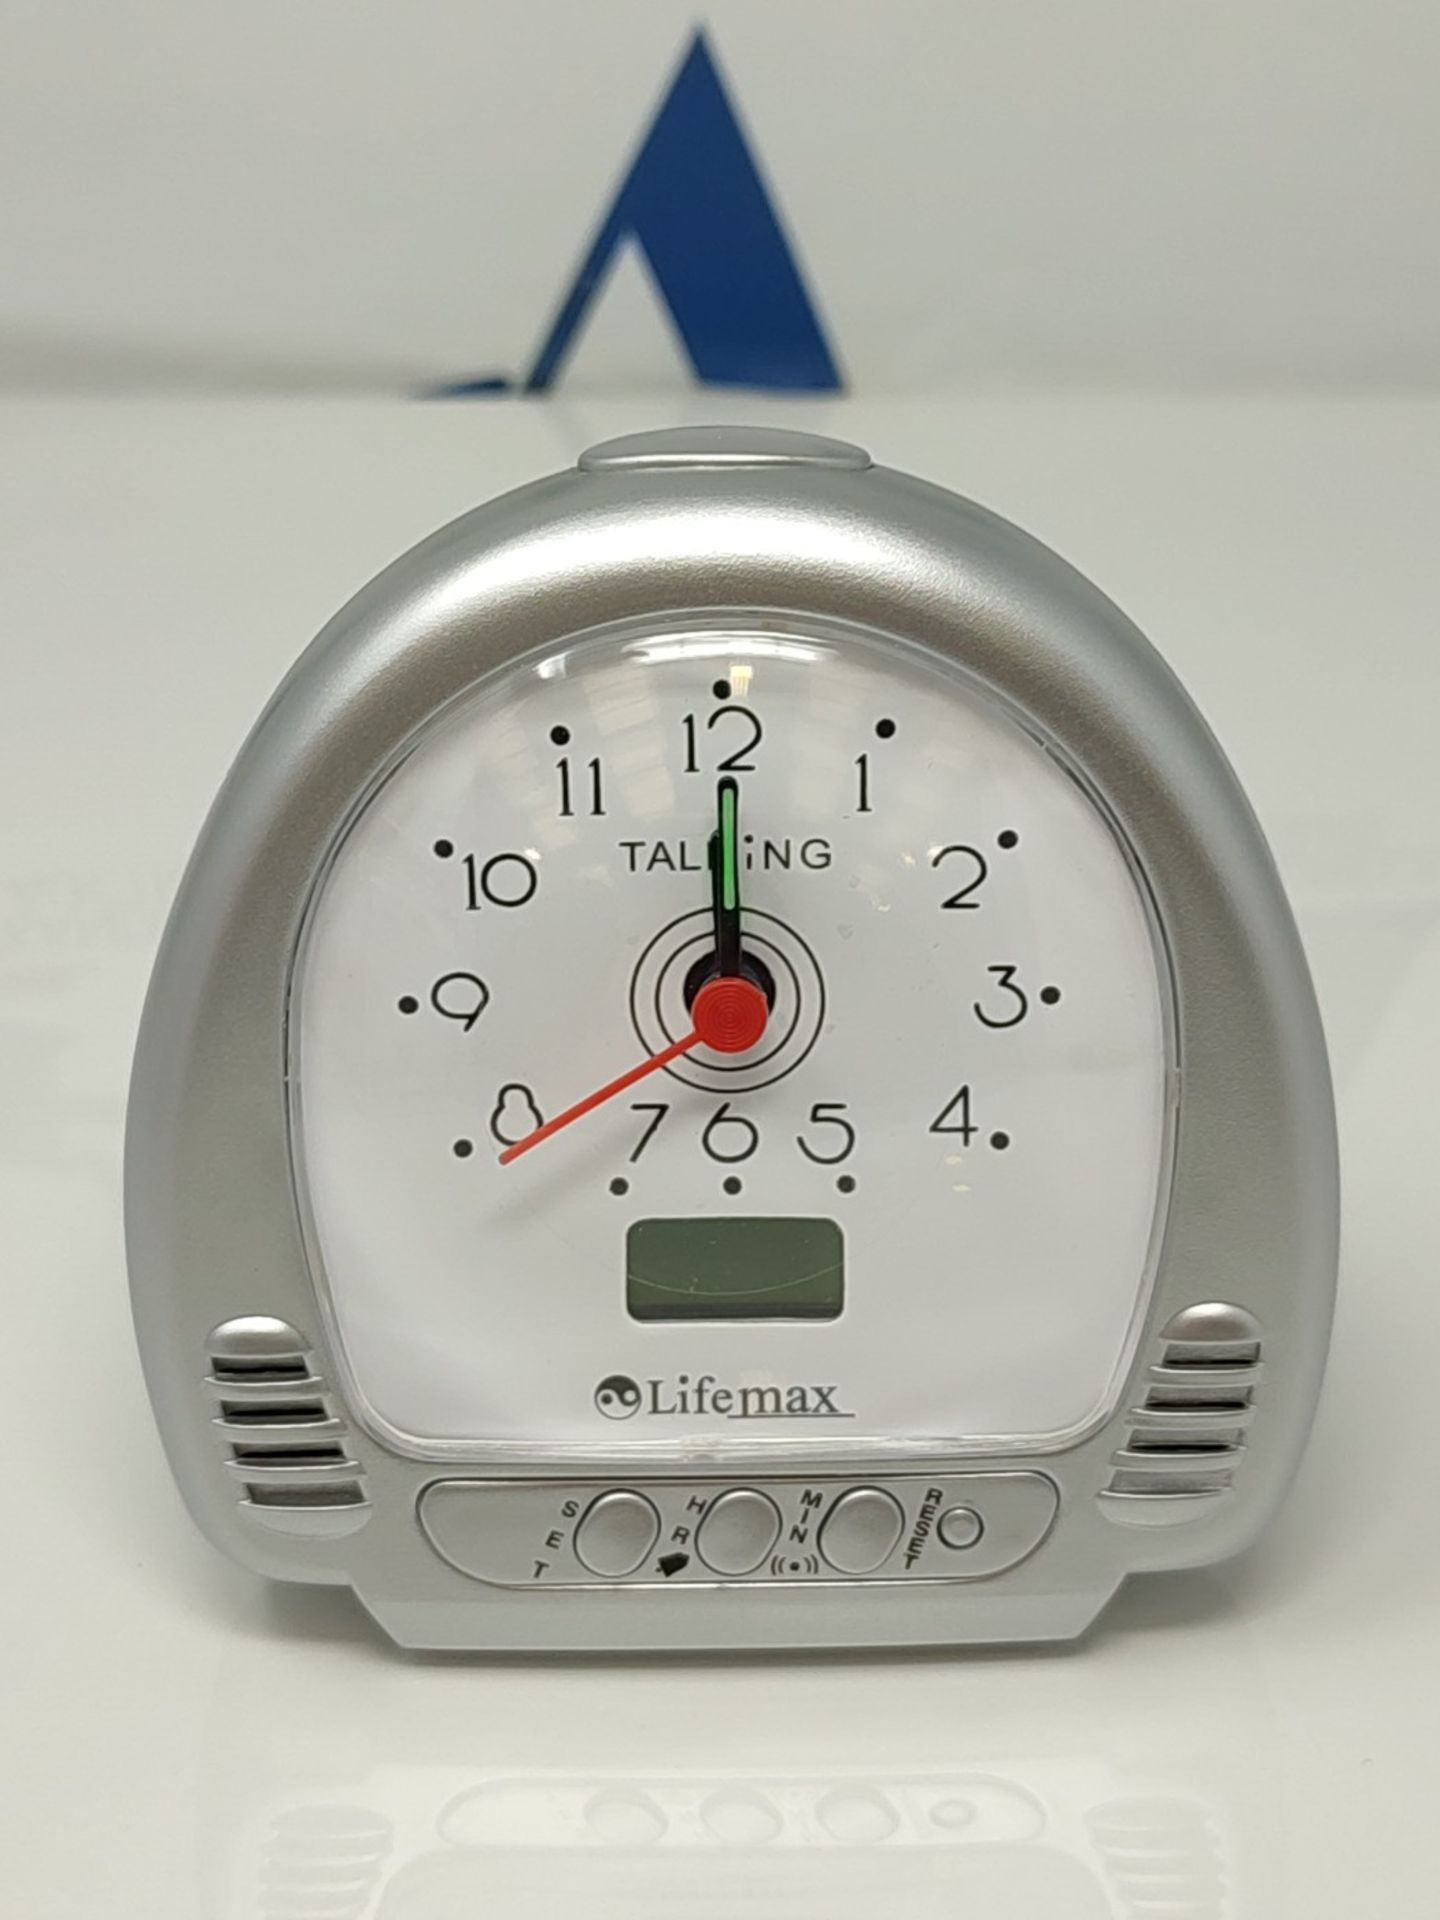 Lifemax 965.1 Talking Clock - Image 3 of 3